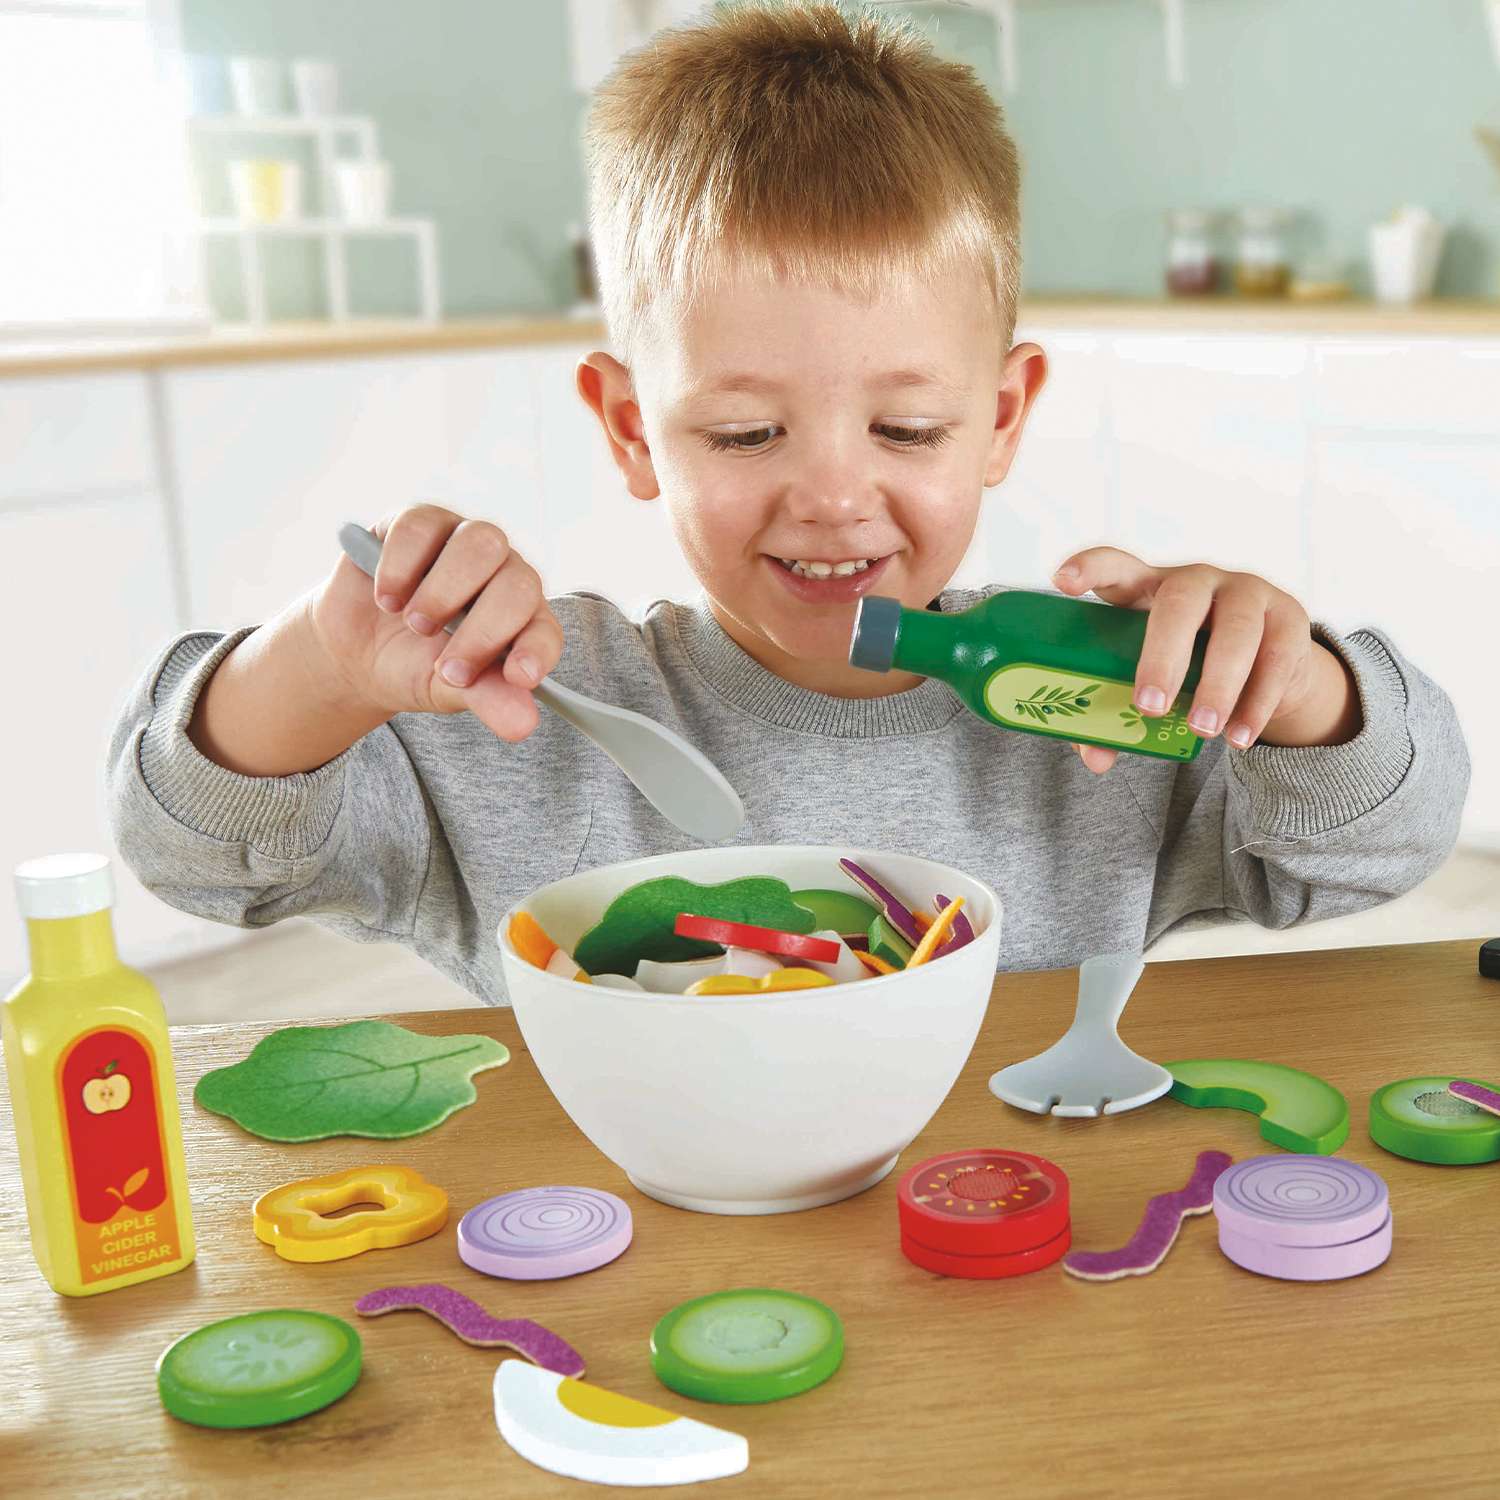 Игрушка HAPE Овощной салат 40 предметов в наборе игрушечная еда и аксессуары - фото 1